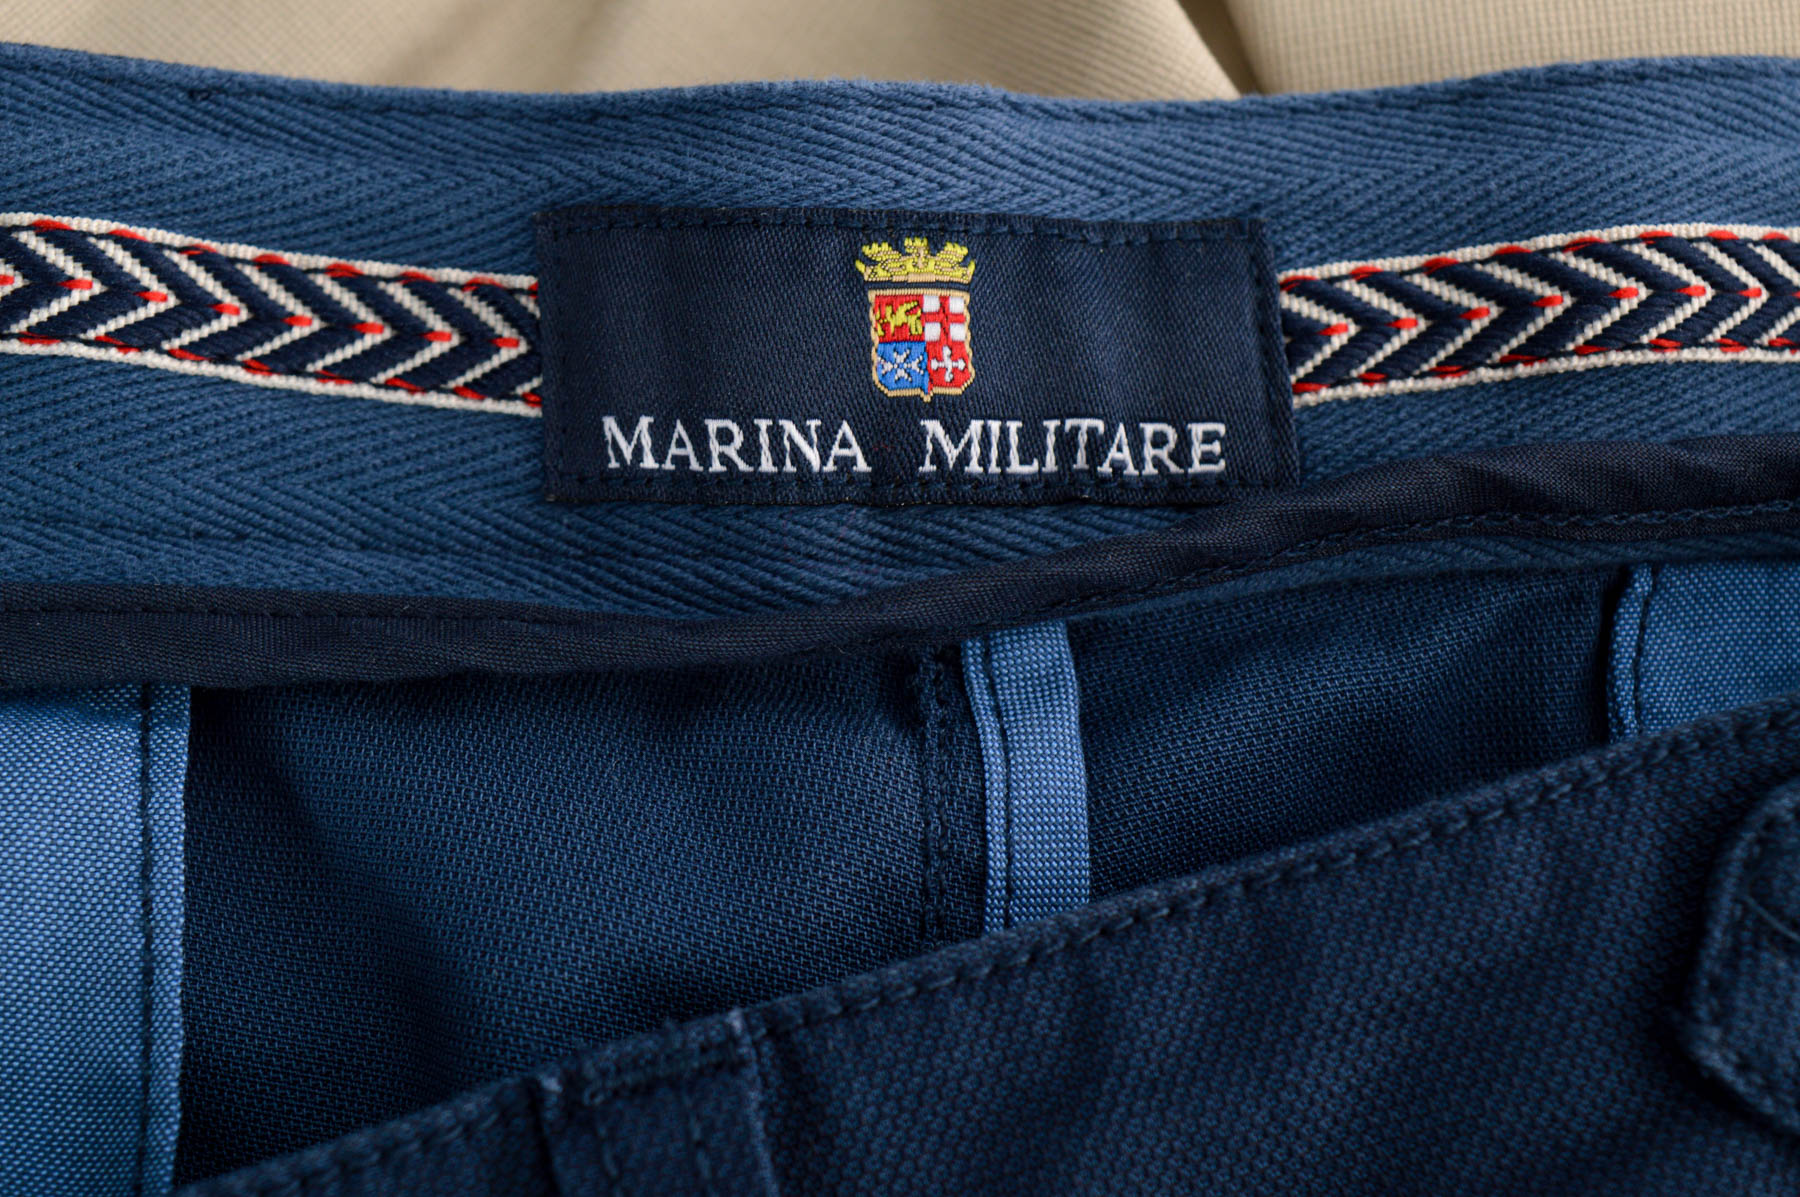 Pantalon pentru bărbați - Marina Militare - 2